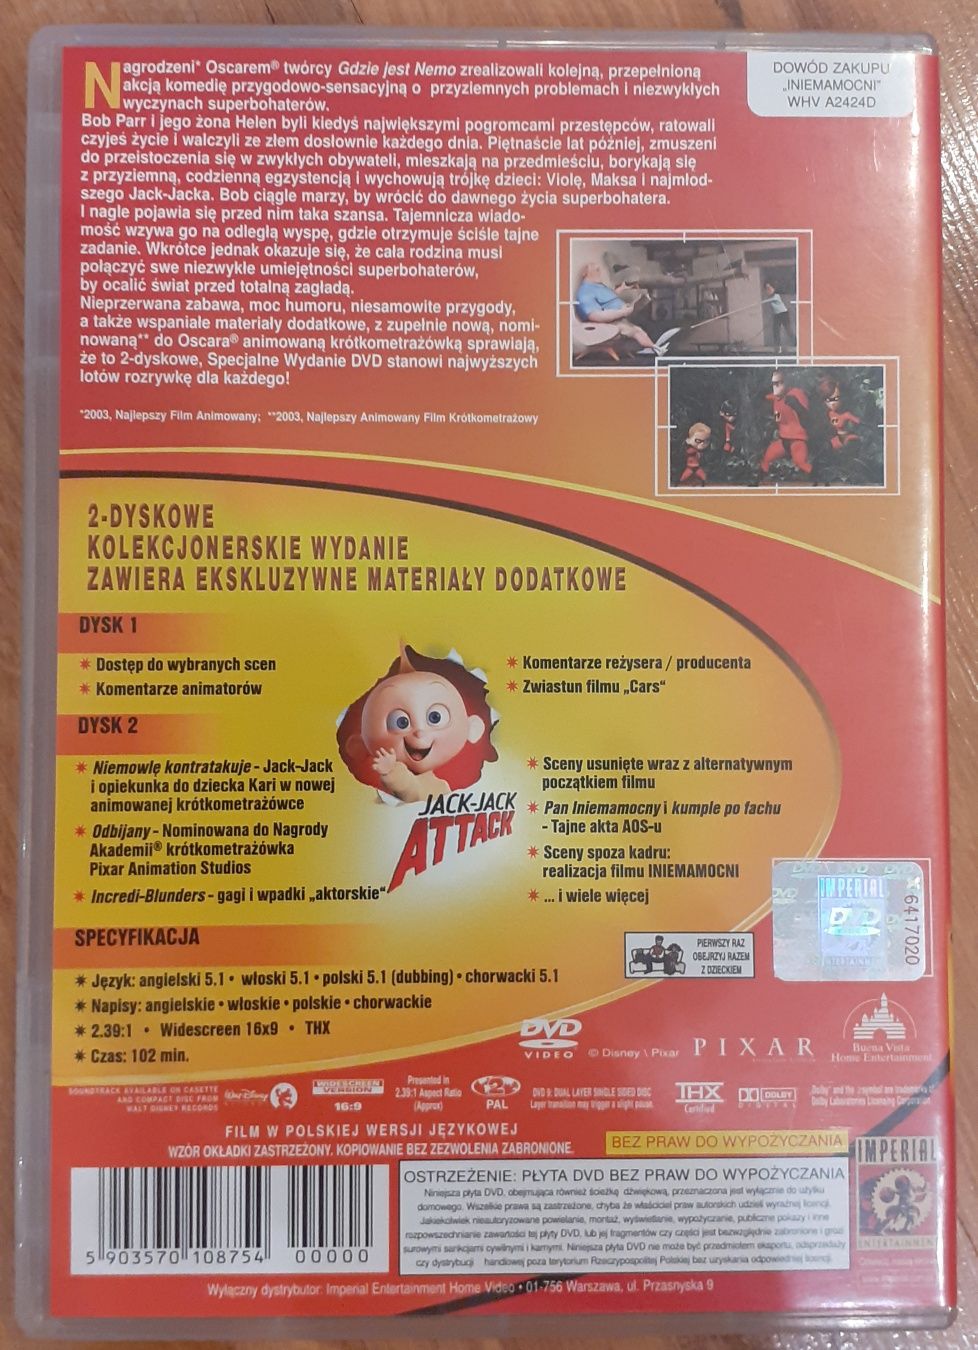 płyta dvd z bajką iniemamocni wydanie specjalne 2 dyskowe